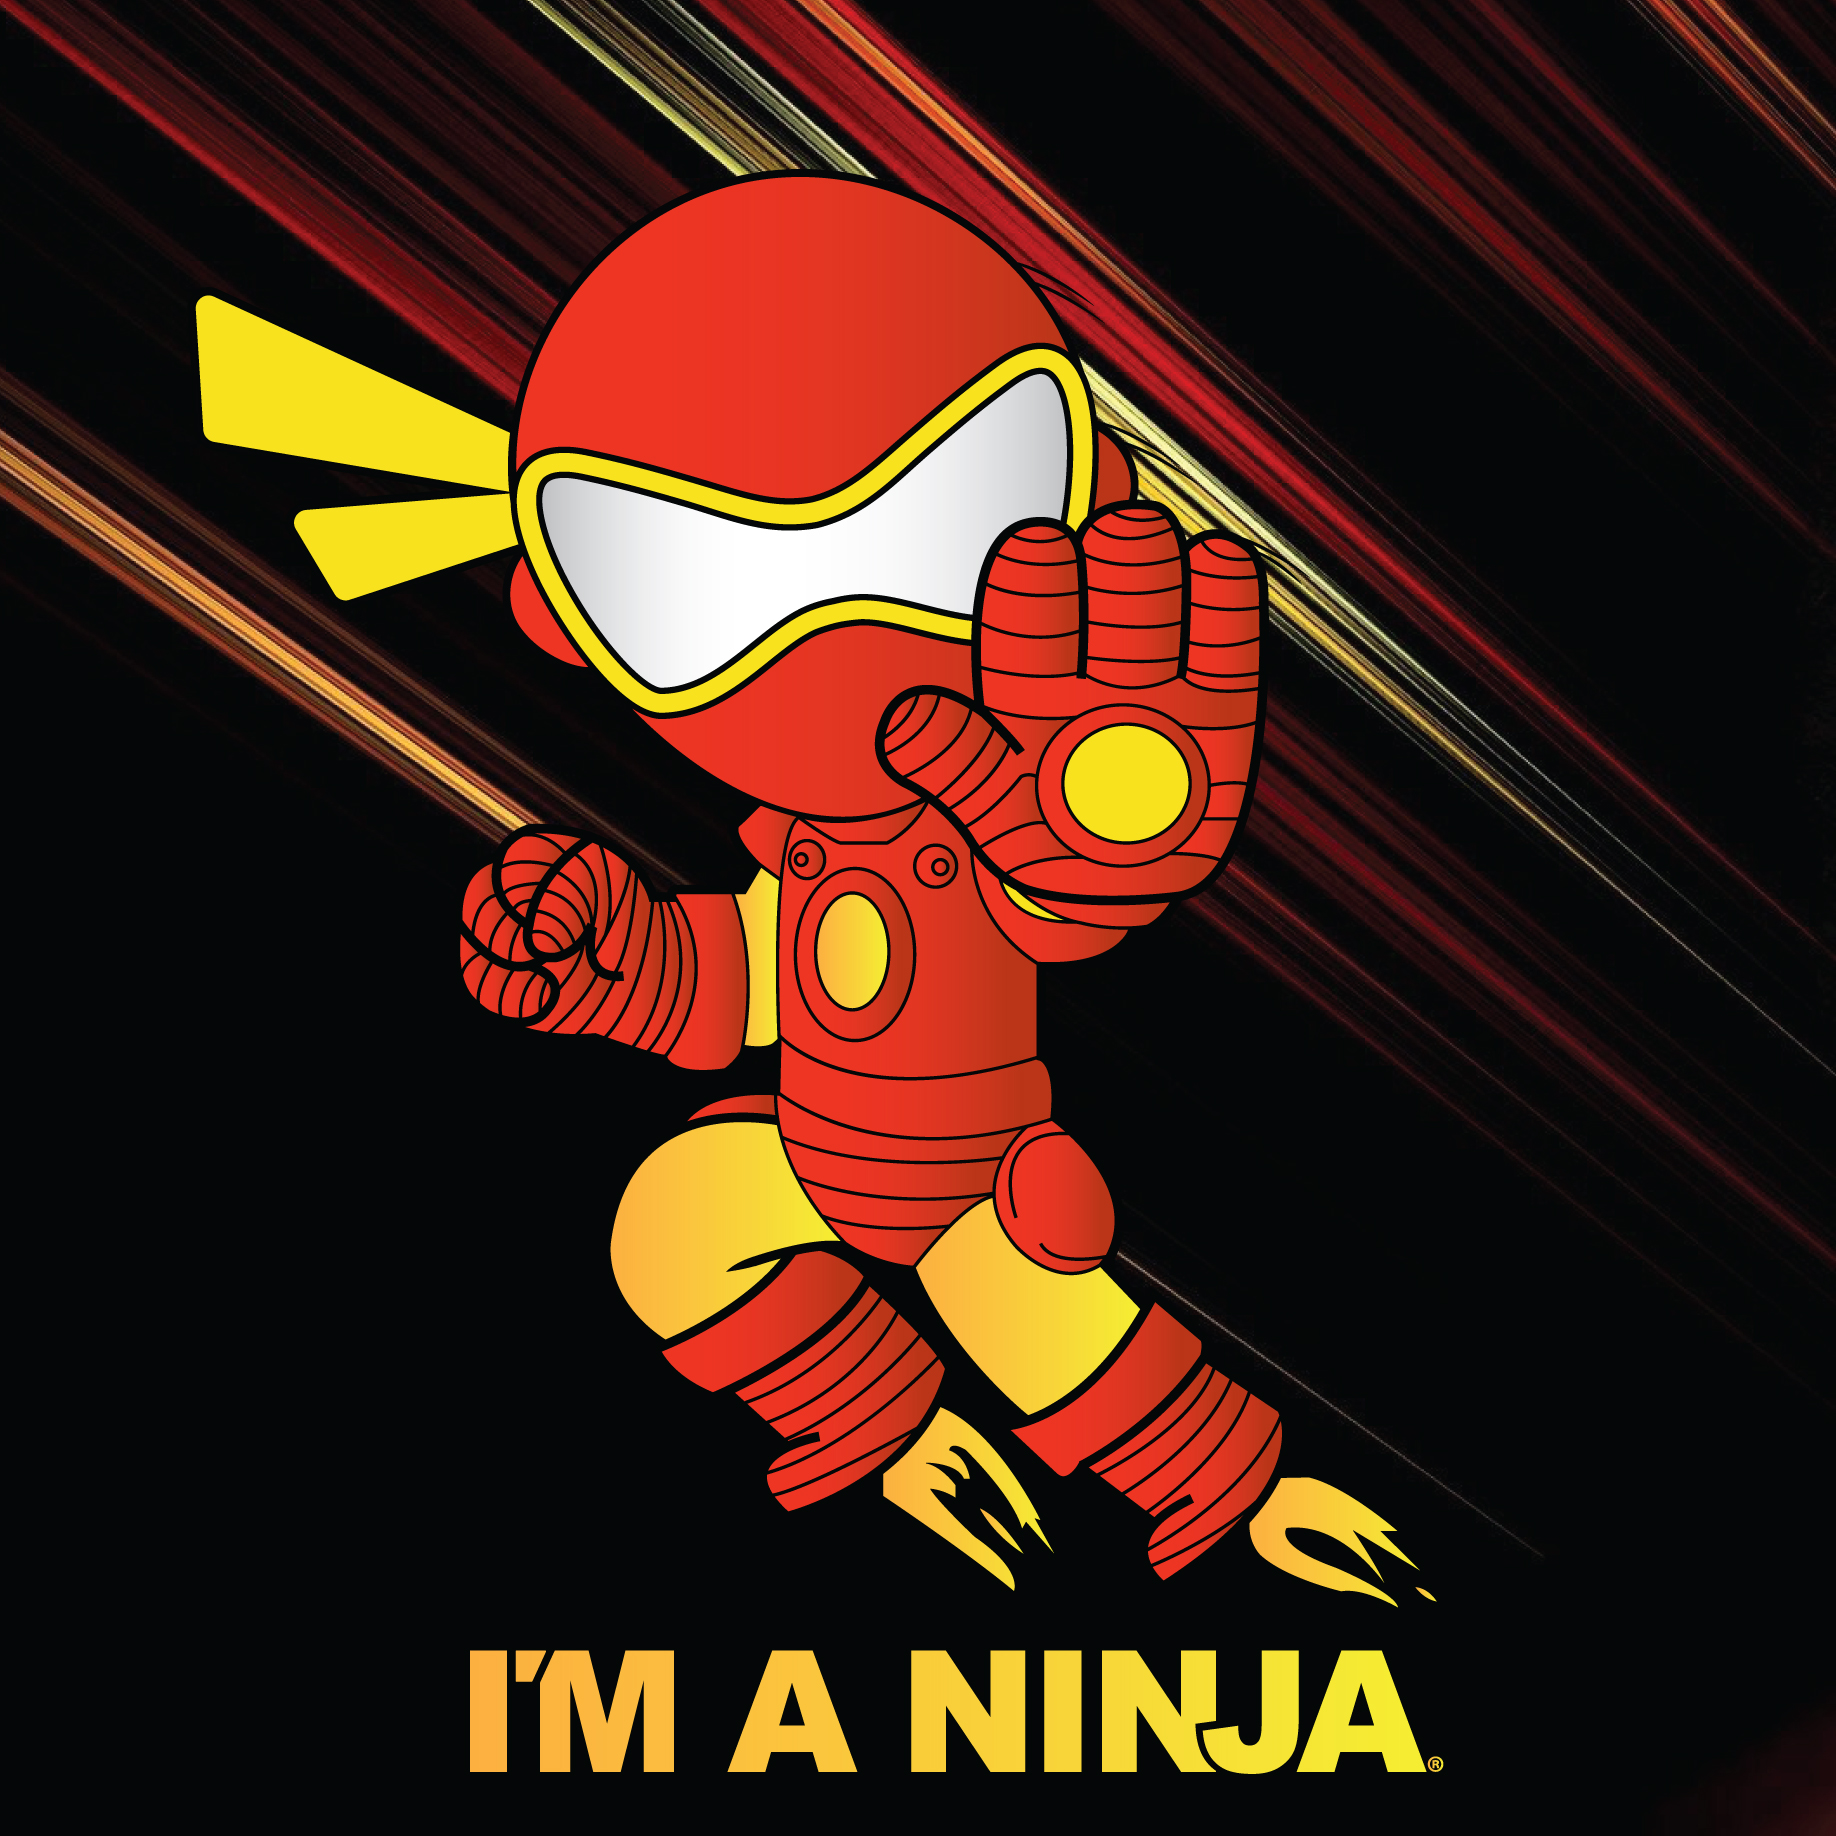 Iron Man x I'M A NINJA